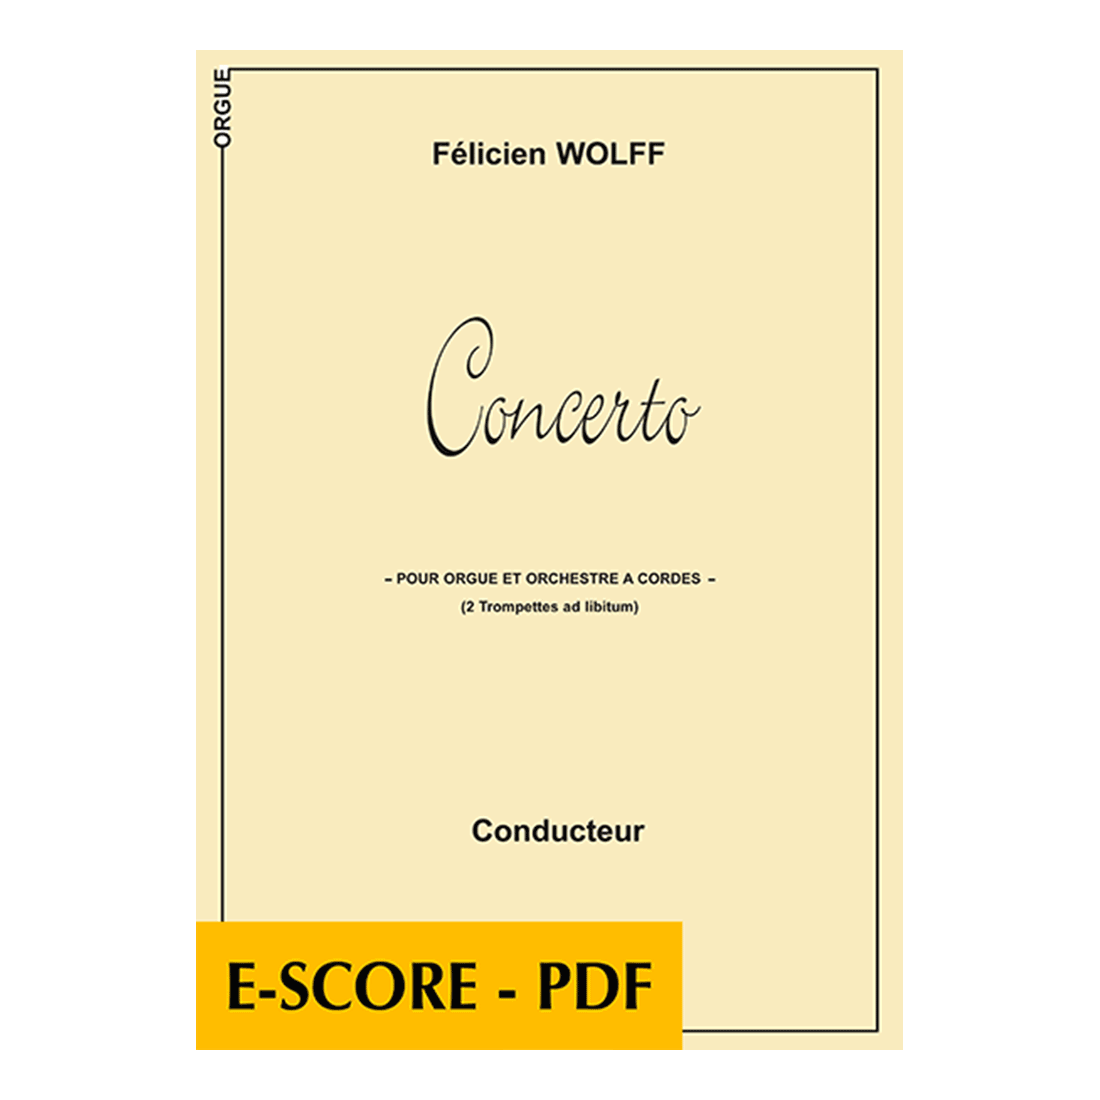 Concerto über Veni Creator für Orgel und Streichorchester (FULL SCORE) - E-score PDF